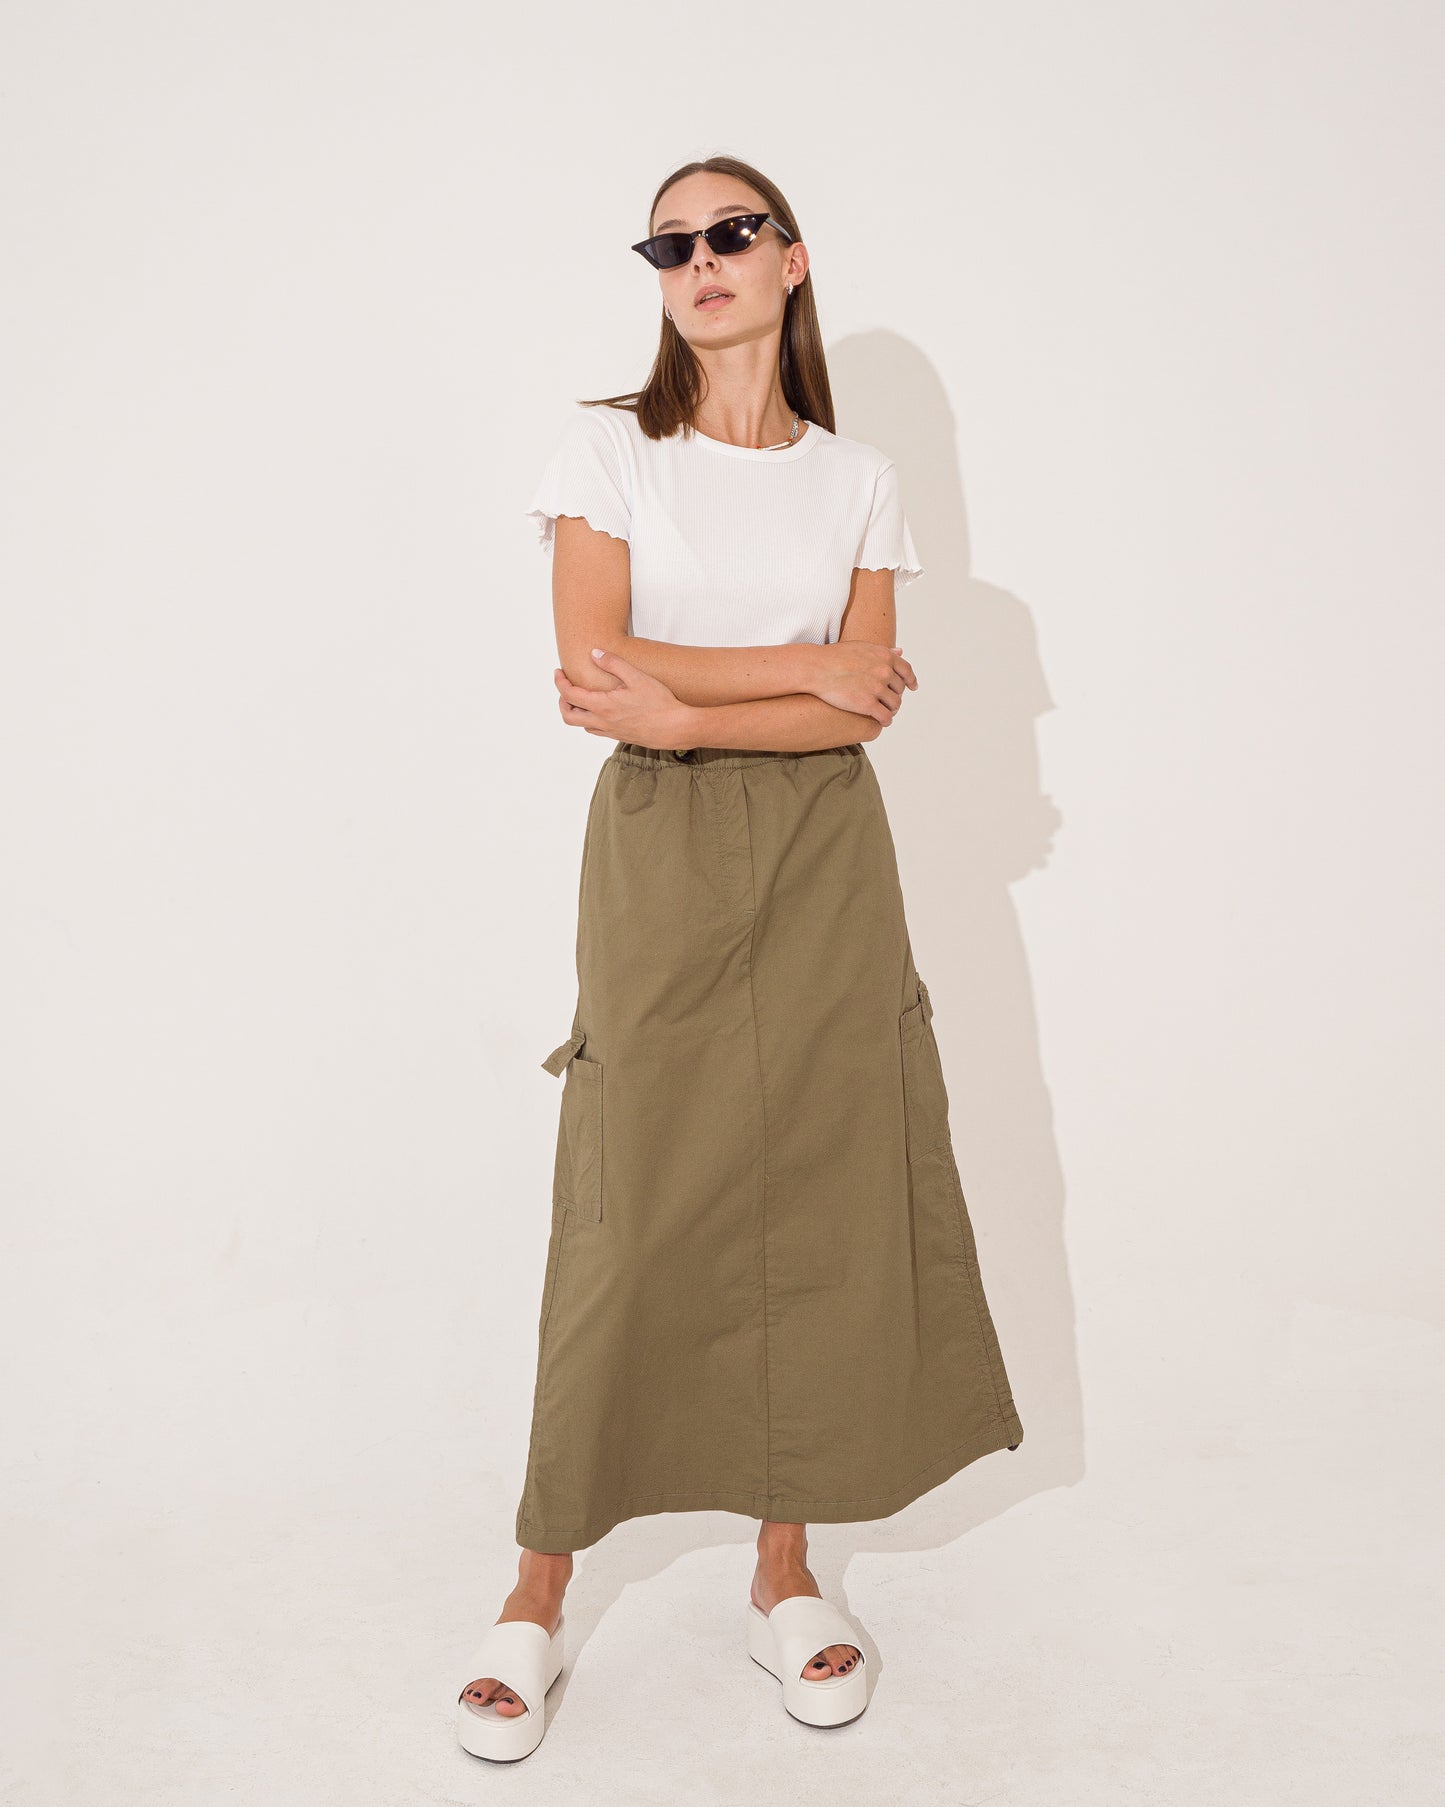 Midi Length Gabardine Skirt With Side Strap